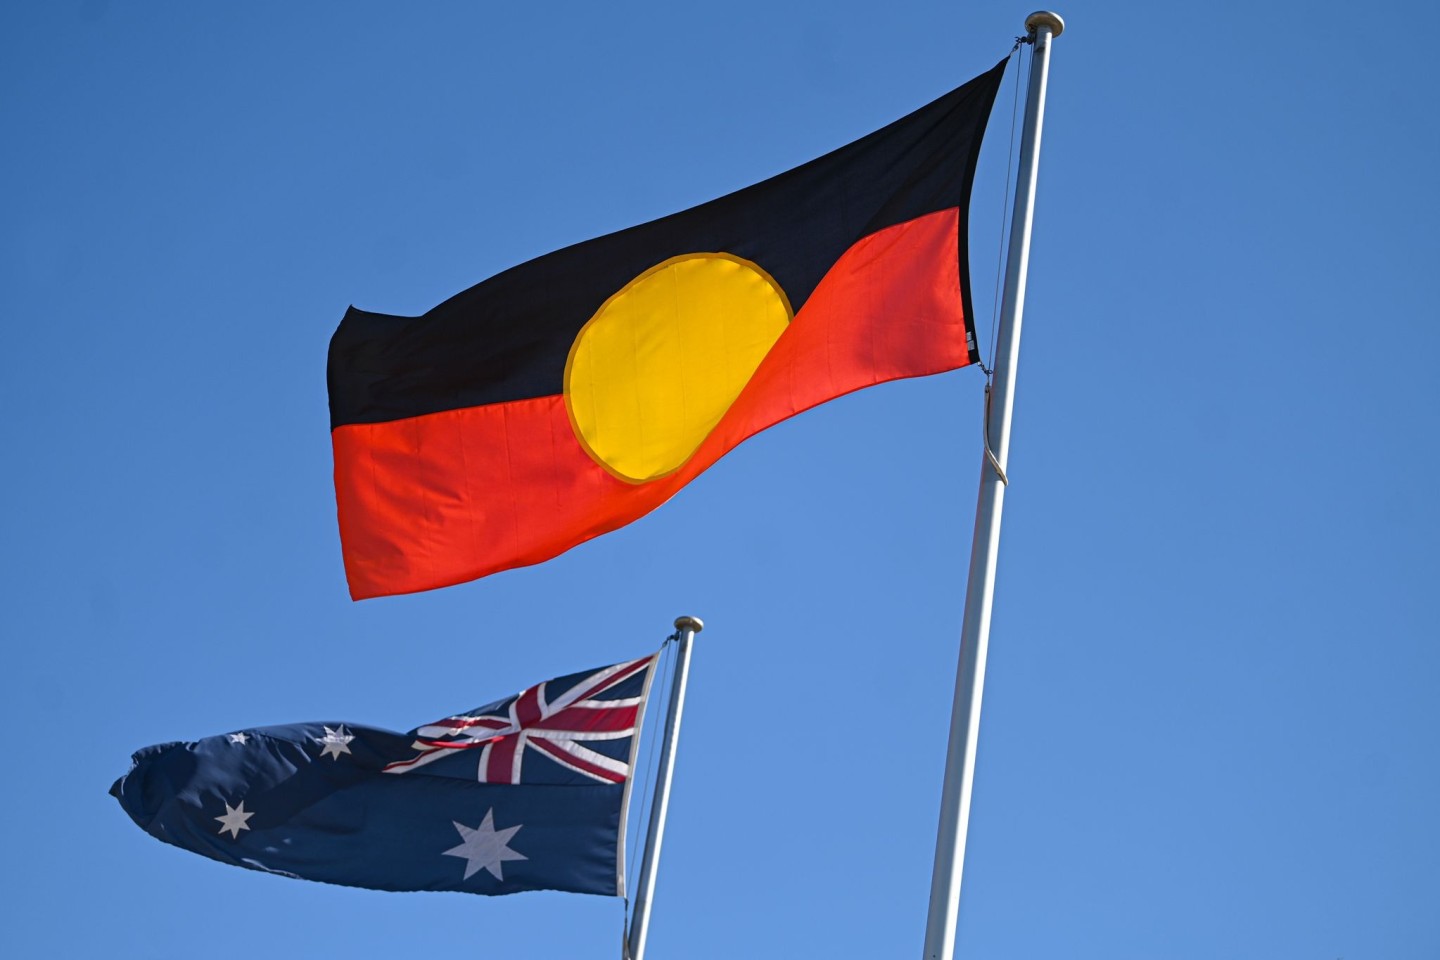 Die Flagge der Aborigines (r) ist neben der australischen Flagge zu sehen.